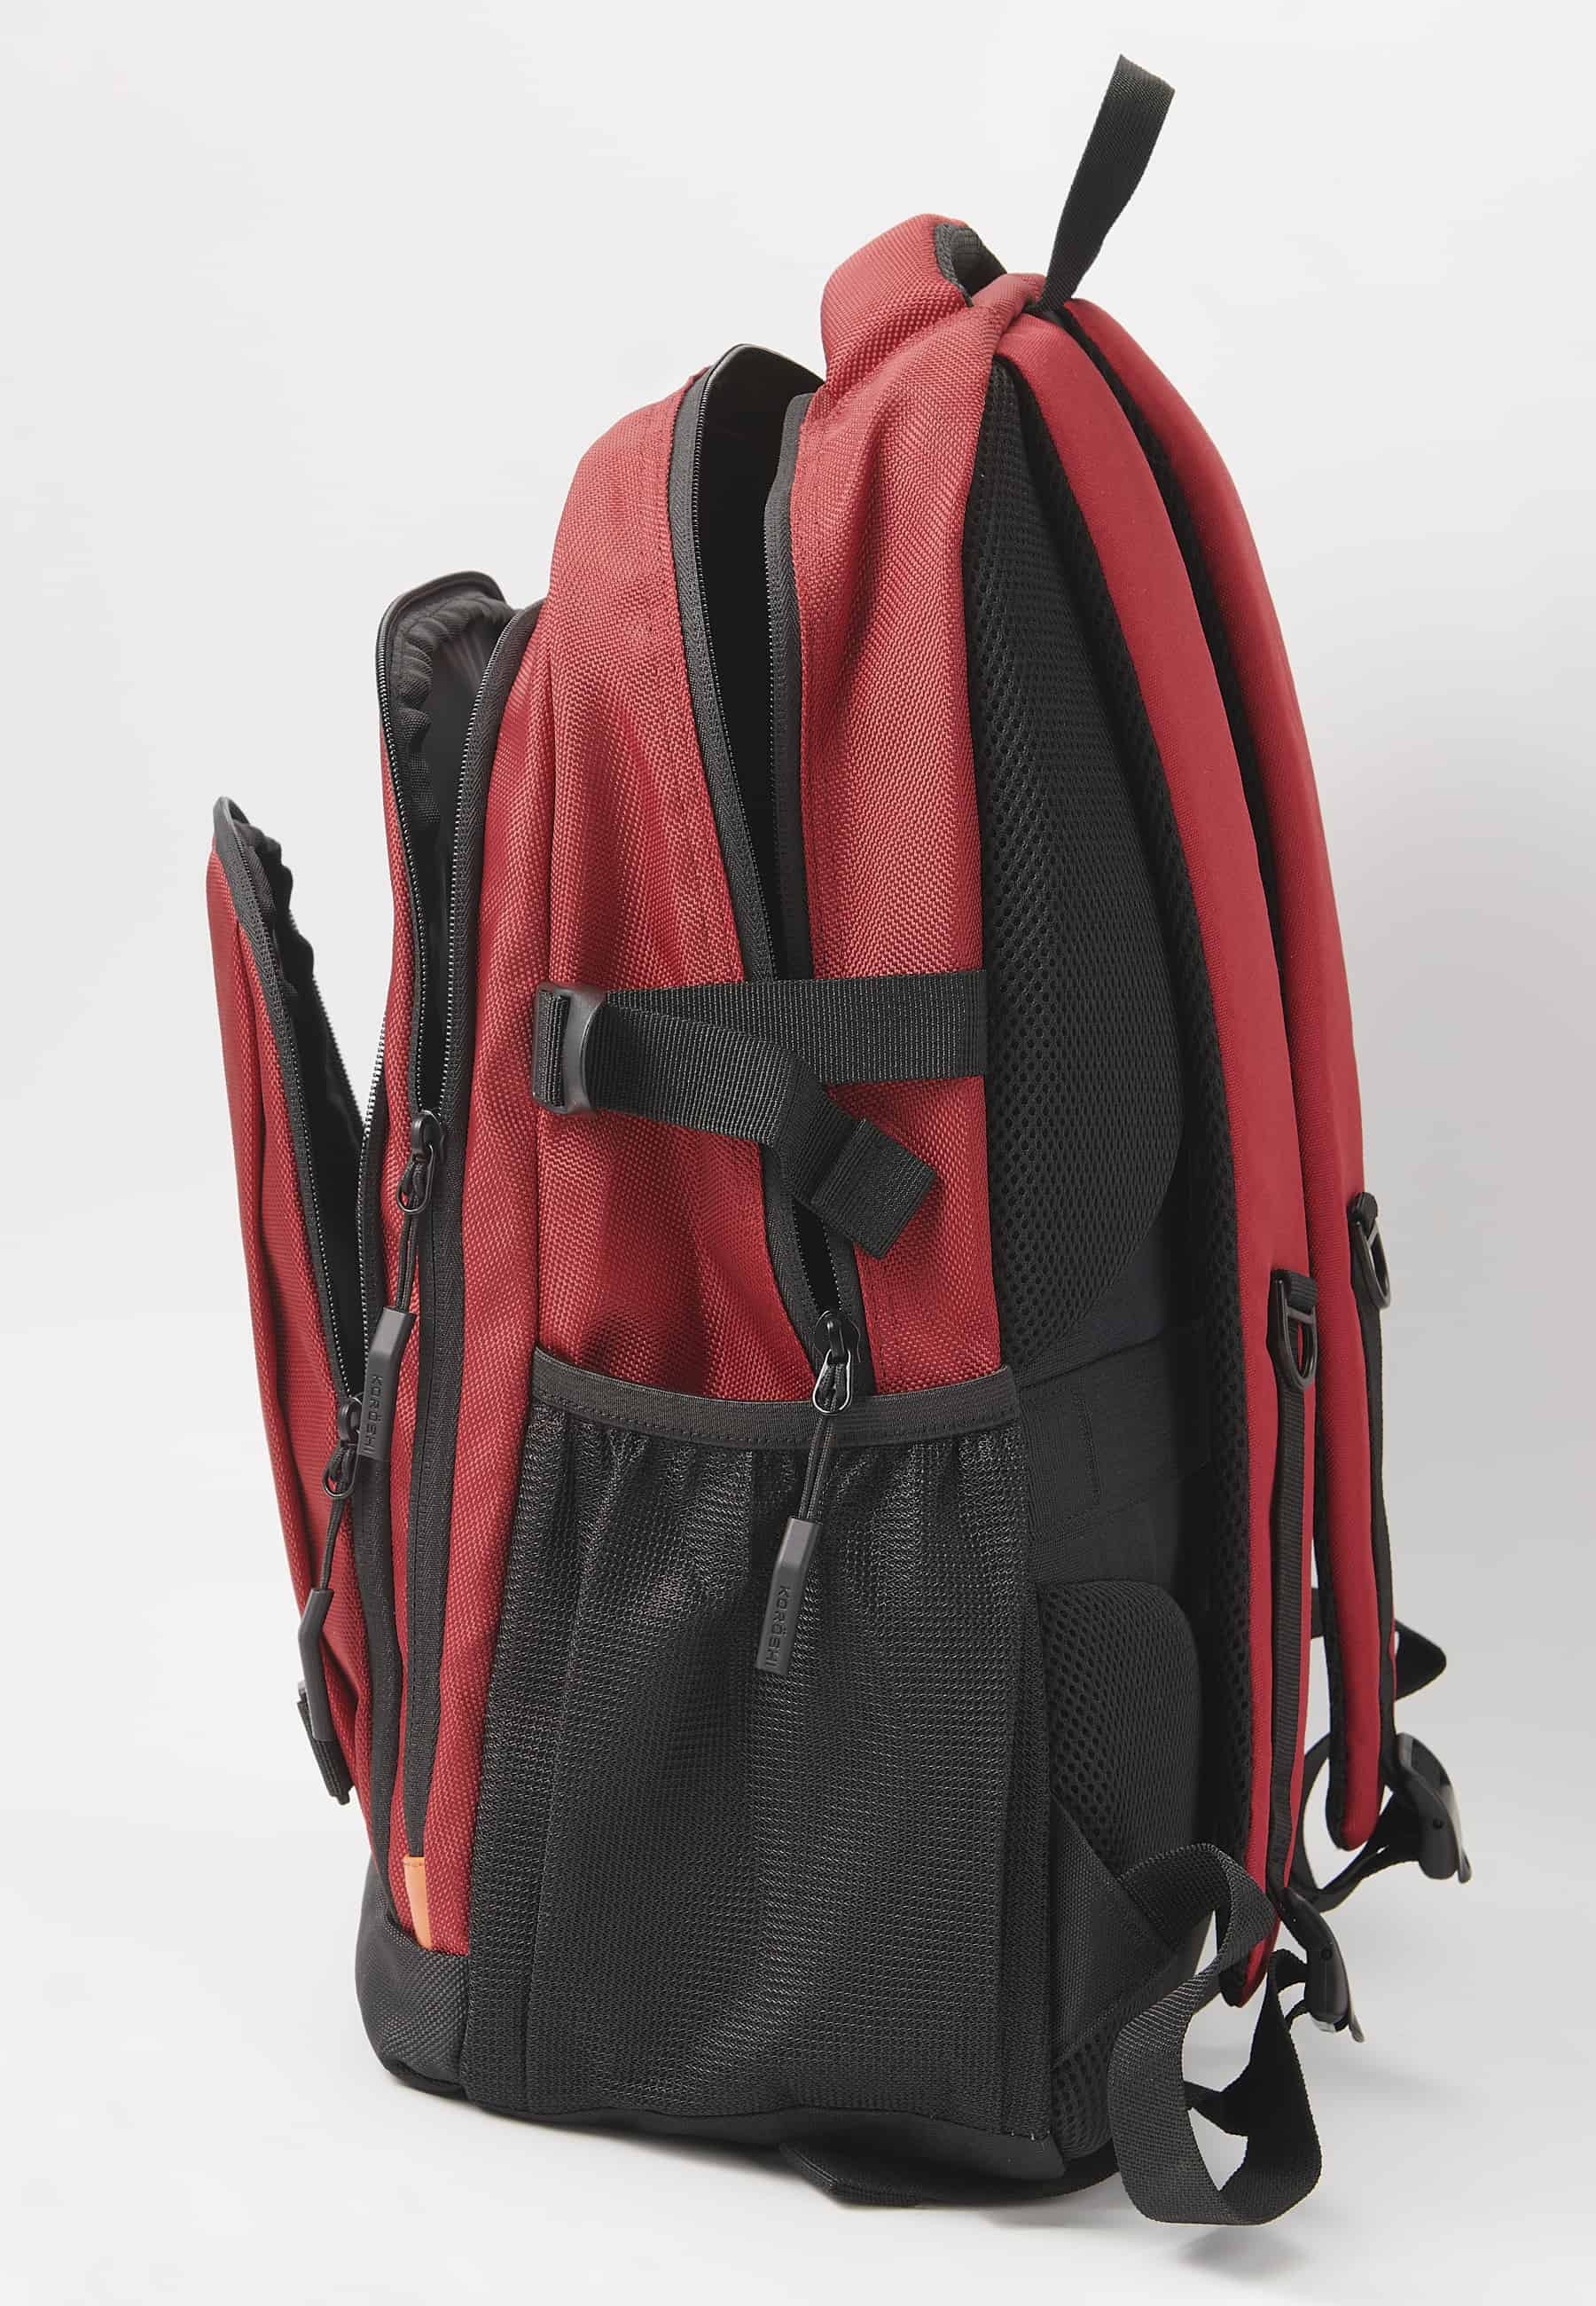 Motxilla Koröshi amb tres compartiments tancats amb cremallera, un per a portàtil, amb butxaques interiors color vermell